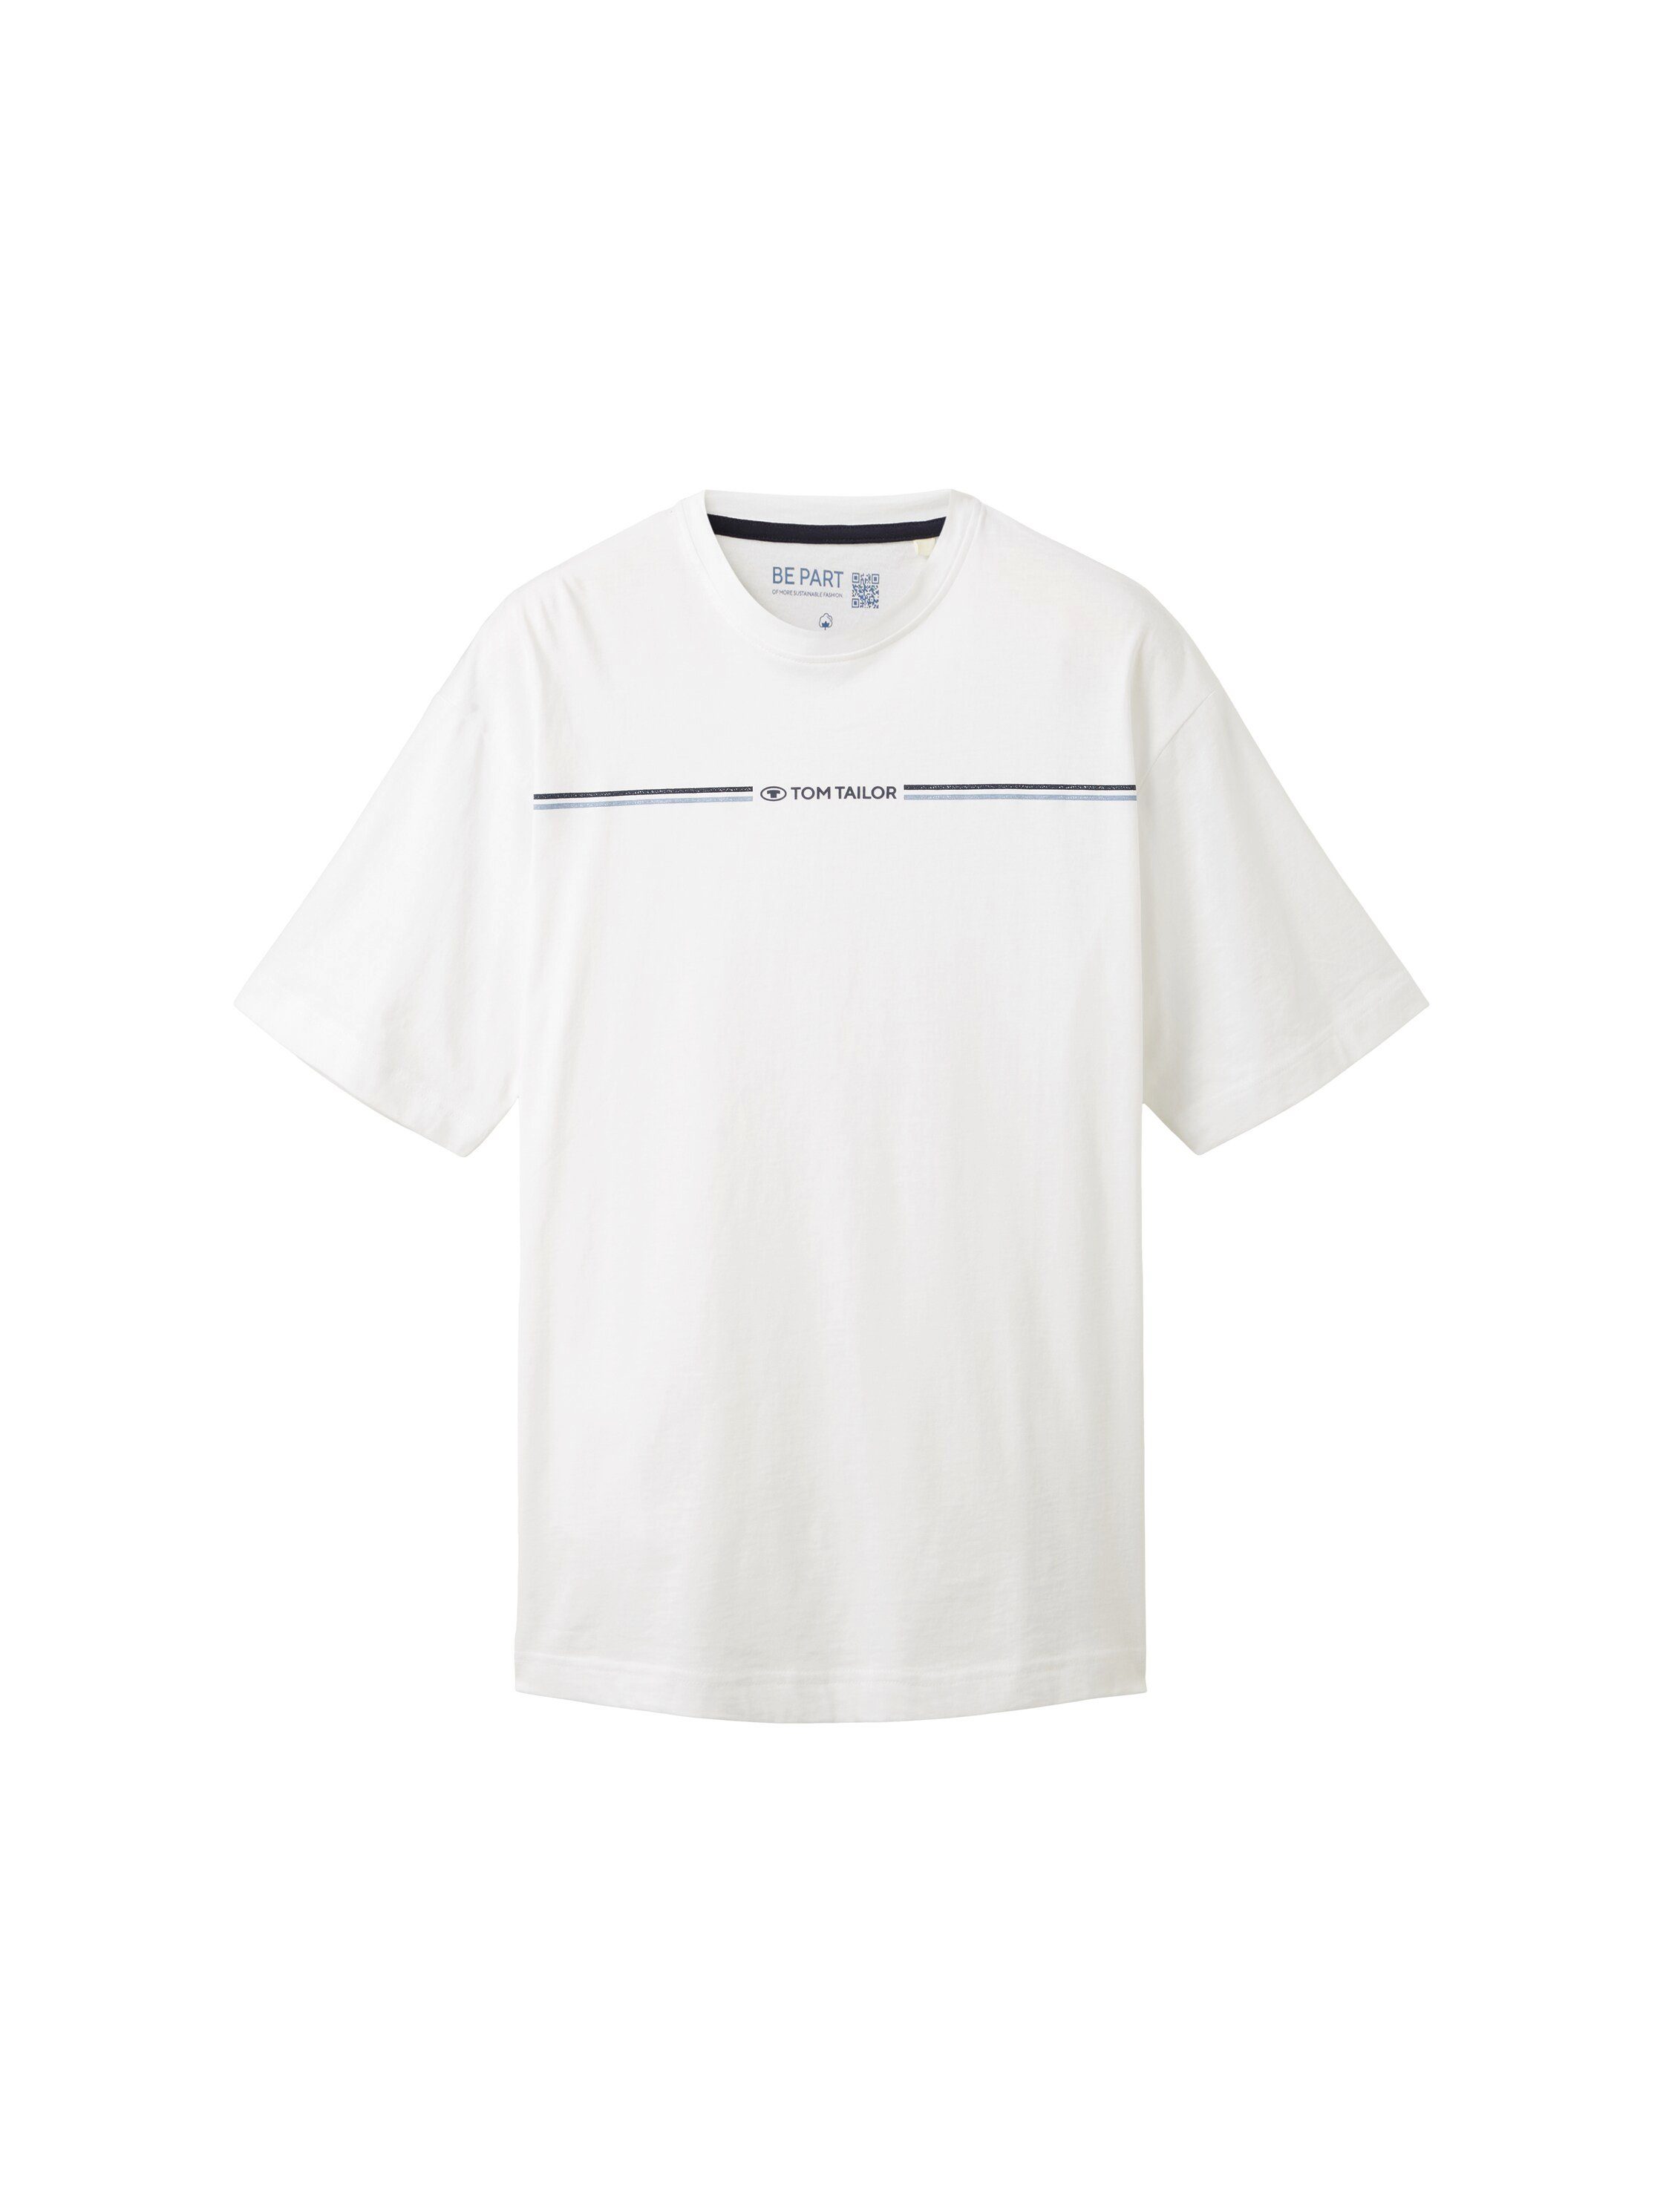 TAILOR Logofrontprint white T-Shirt TOM mit